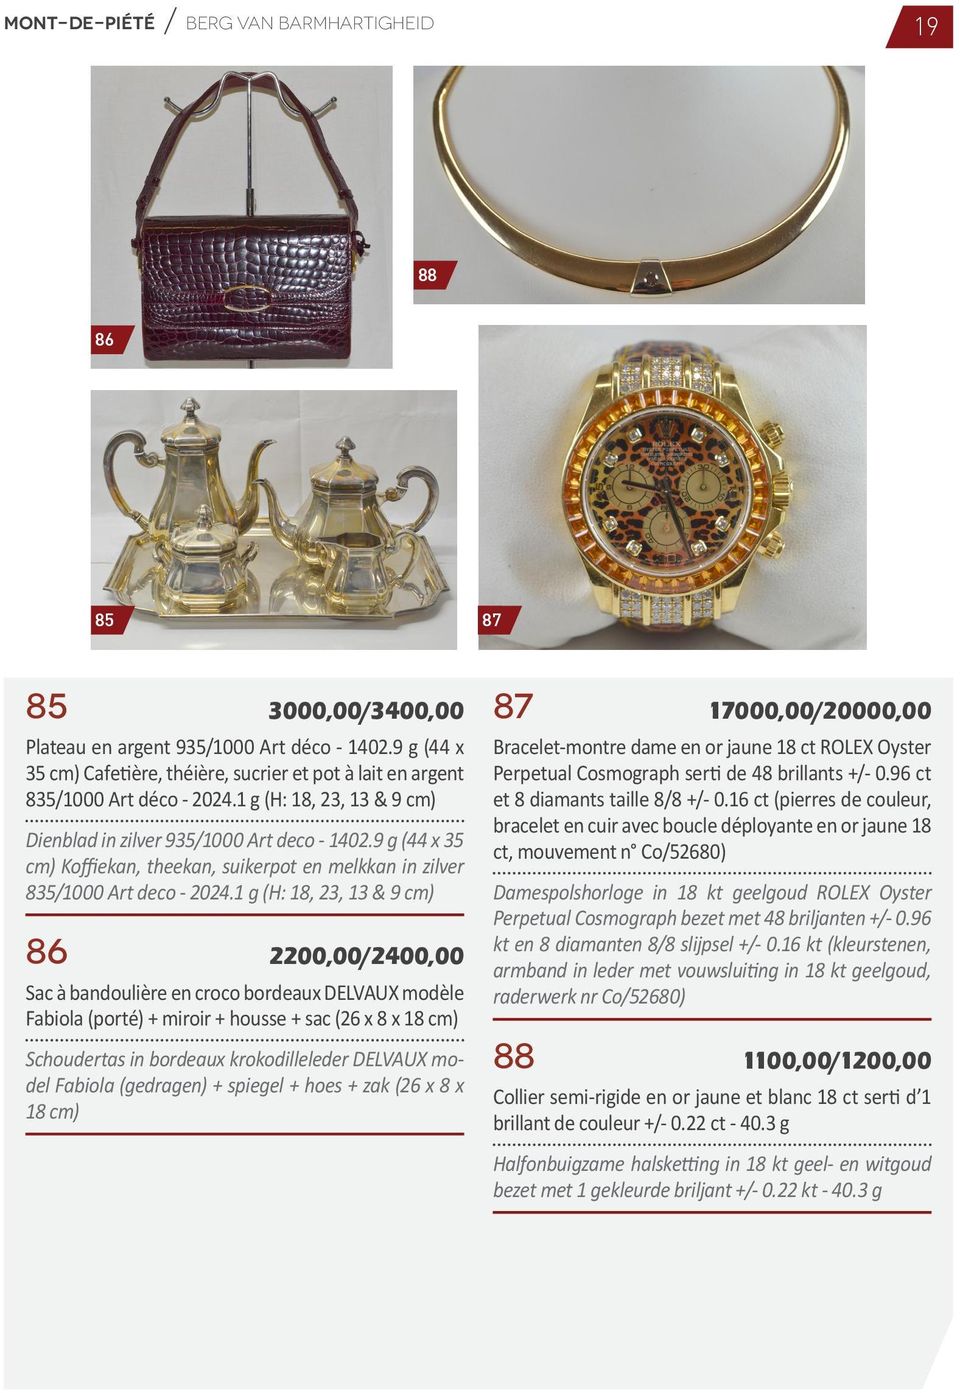 9 g (44 x 35 cm) Koffiekan, theekan, suikerpot en melkkan in zilver 835/1000 Art deco - 2024.